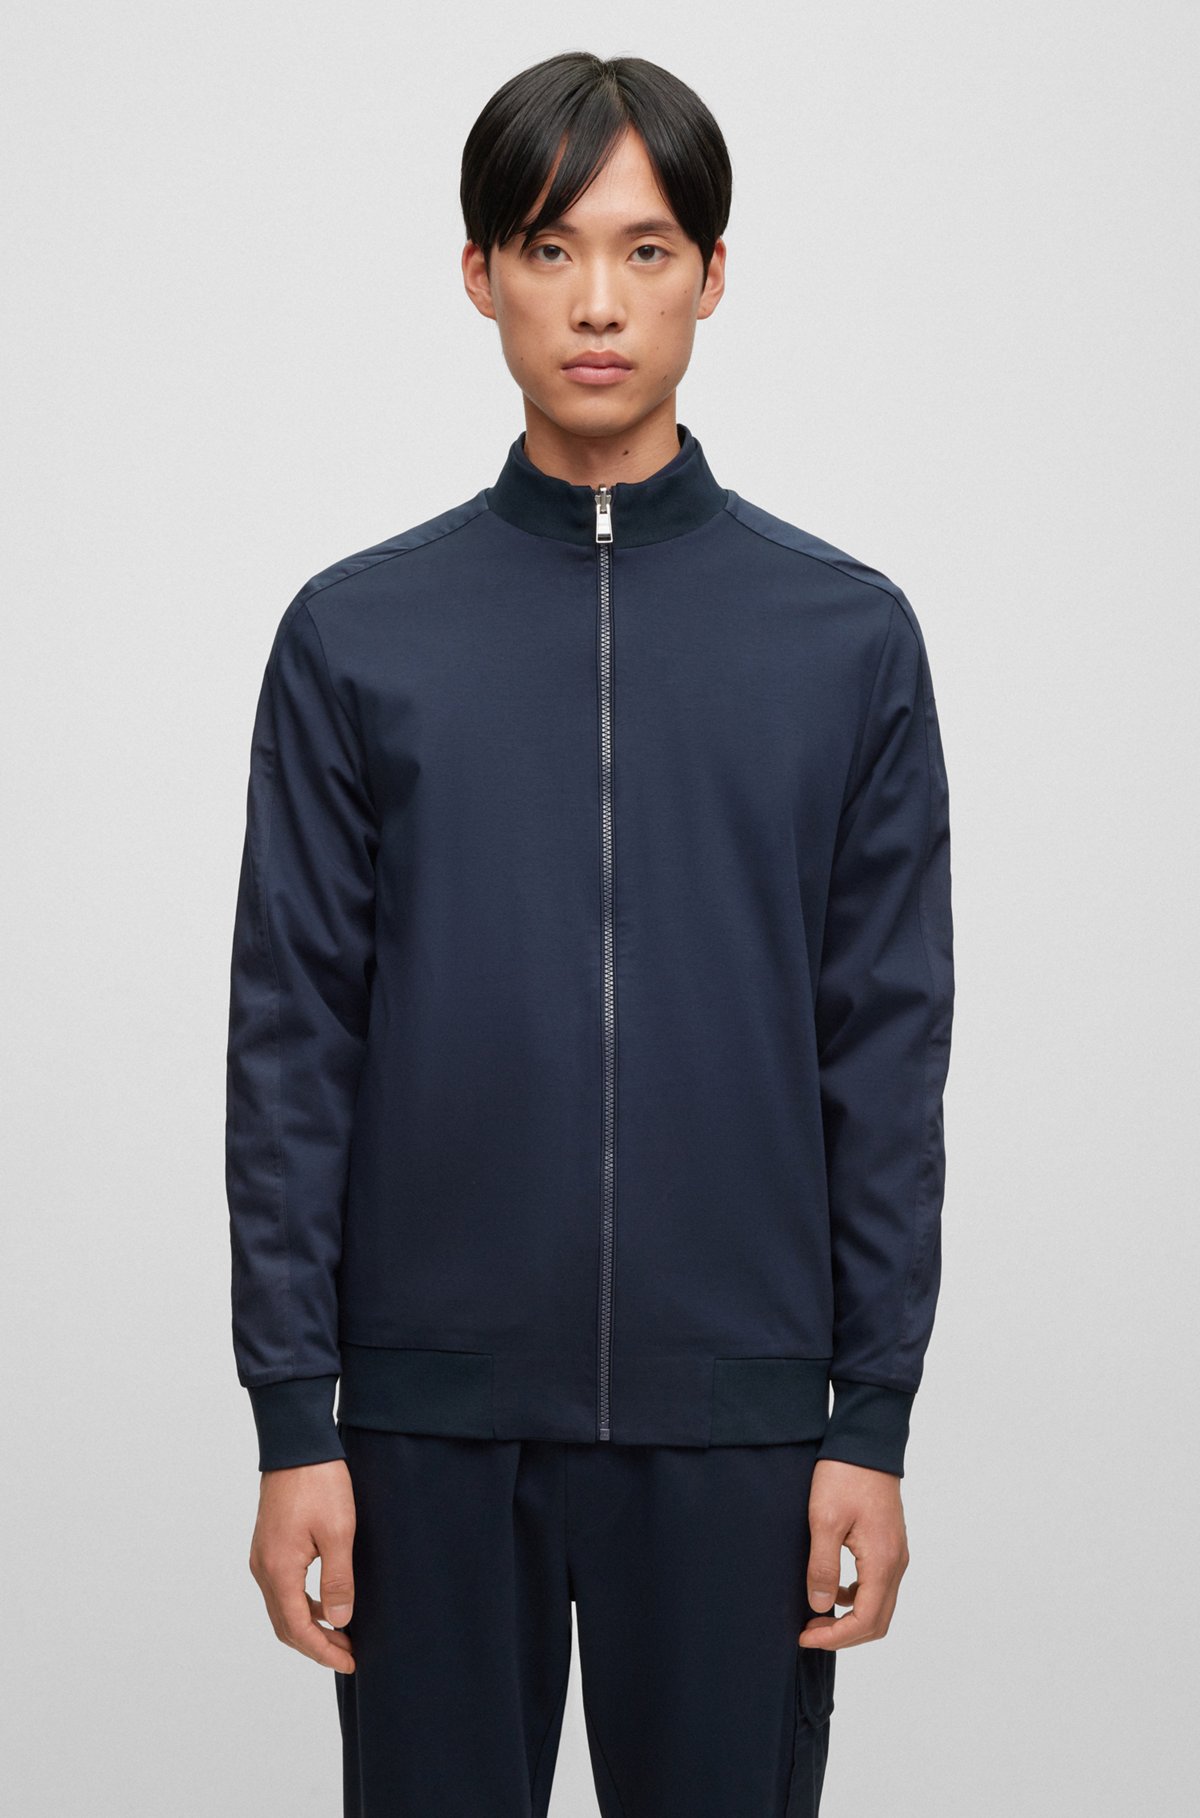 BOSS - Zip-up sweatshirt in mercerized cotton with insert details